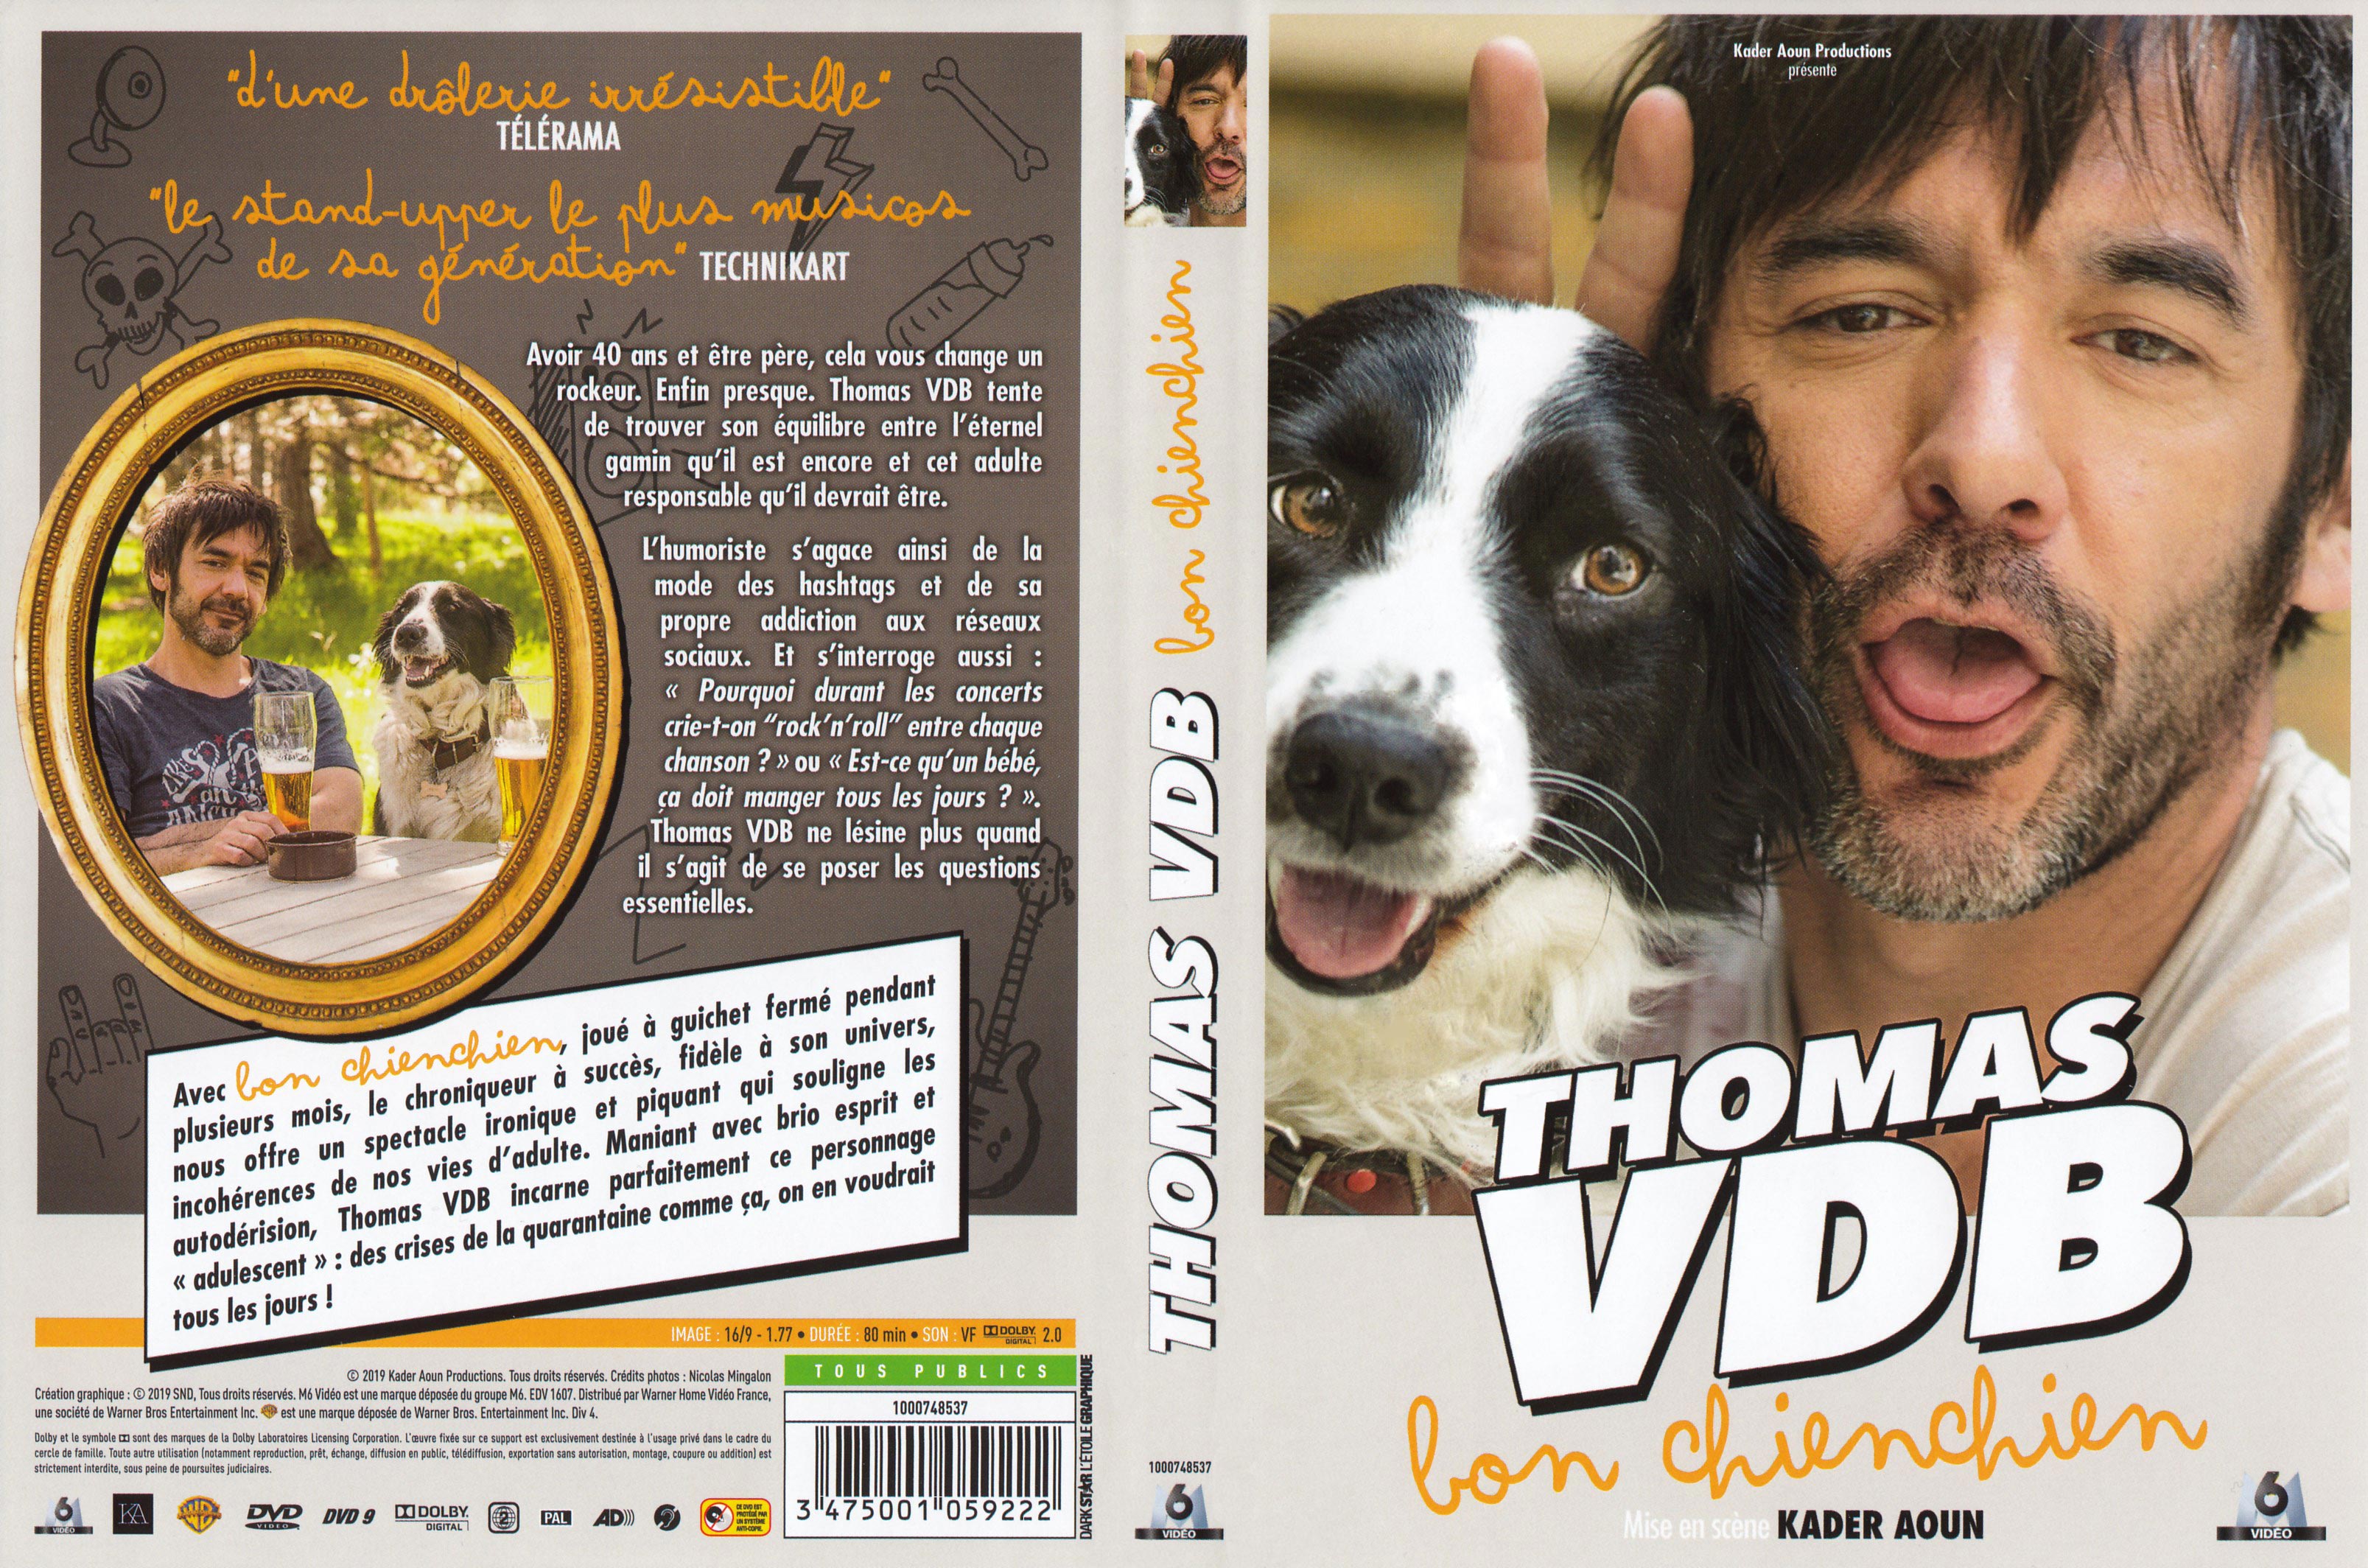 Jaquette DVD Thomas VDB - Bon chienchein